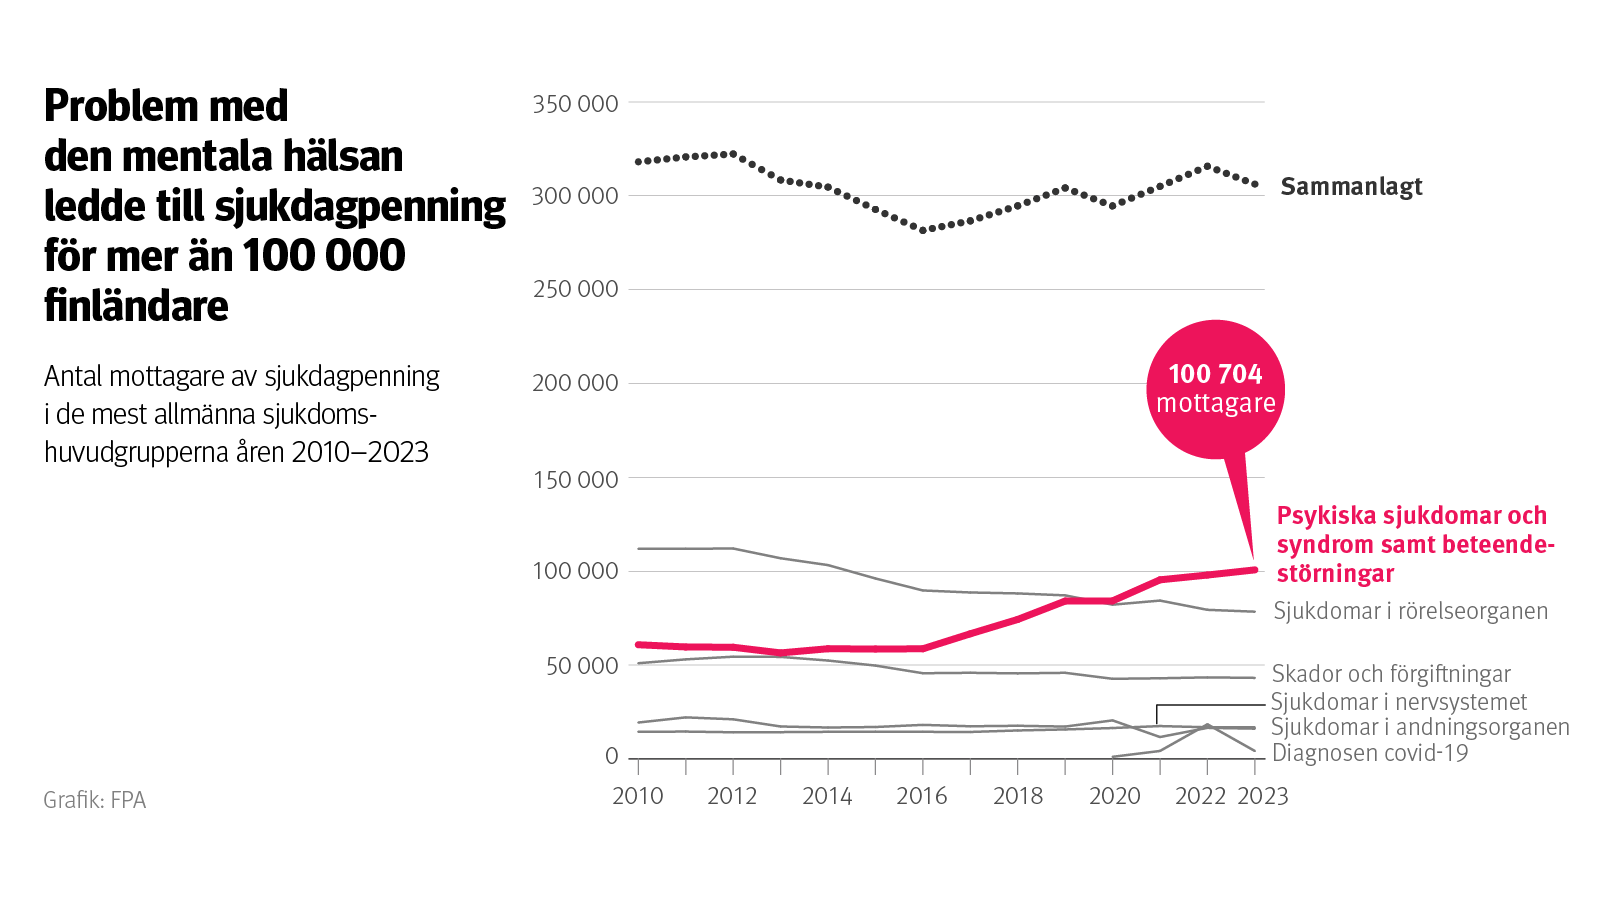 Graf: Antal mottagare av sjukdagpenning i de mest allmänna sjukdomshuvudgrupperna åren 2010–2023. På bilden ser man att problem med den mentala hälsan har blivit största orsaken till långvarig sjukfrånvaro, och att de ledde till sjukdagpenning för mer än 100 000 finländare år 2023.